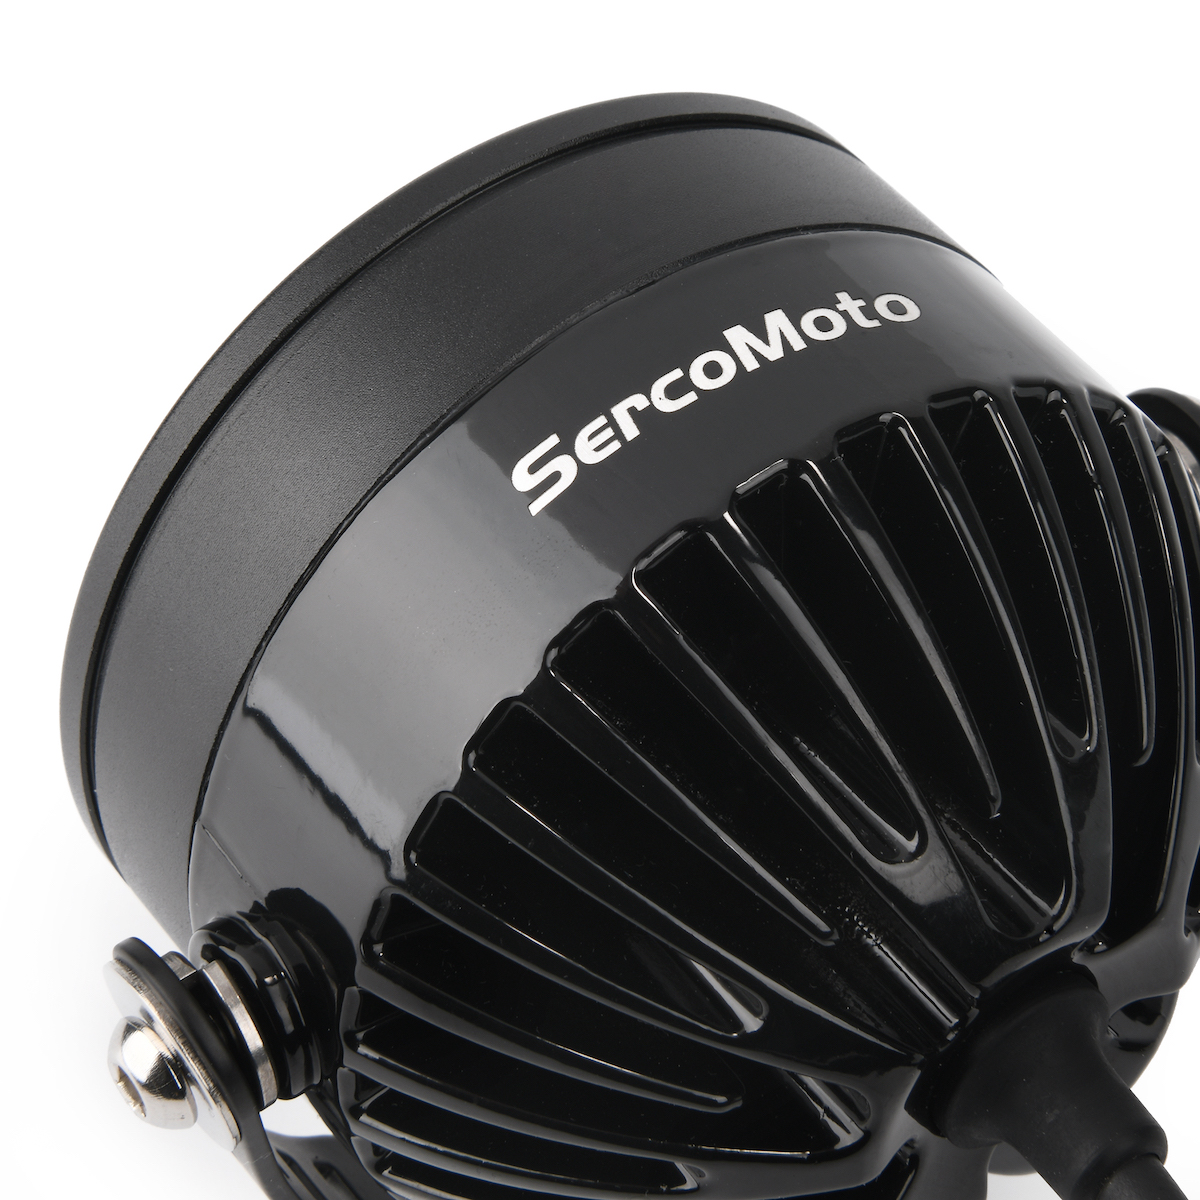 Kit Faros Auxiliares Led Sercomoto Sm6121SD Con Smart Dimmer iMoto